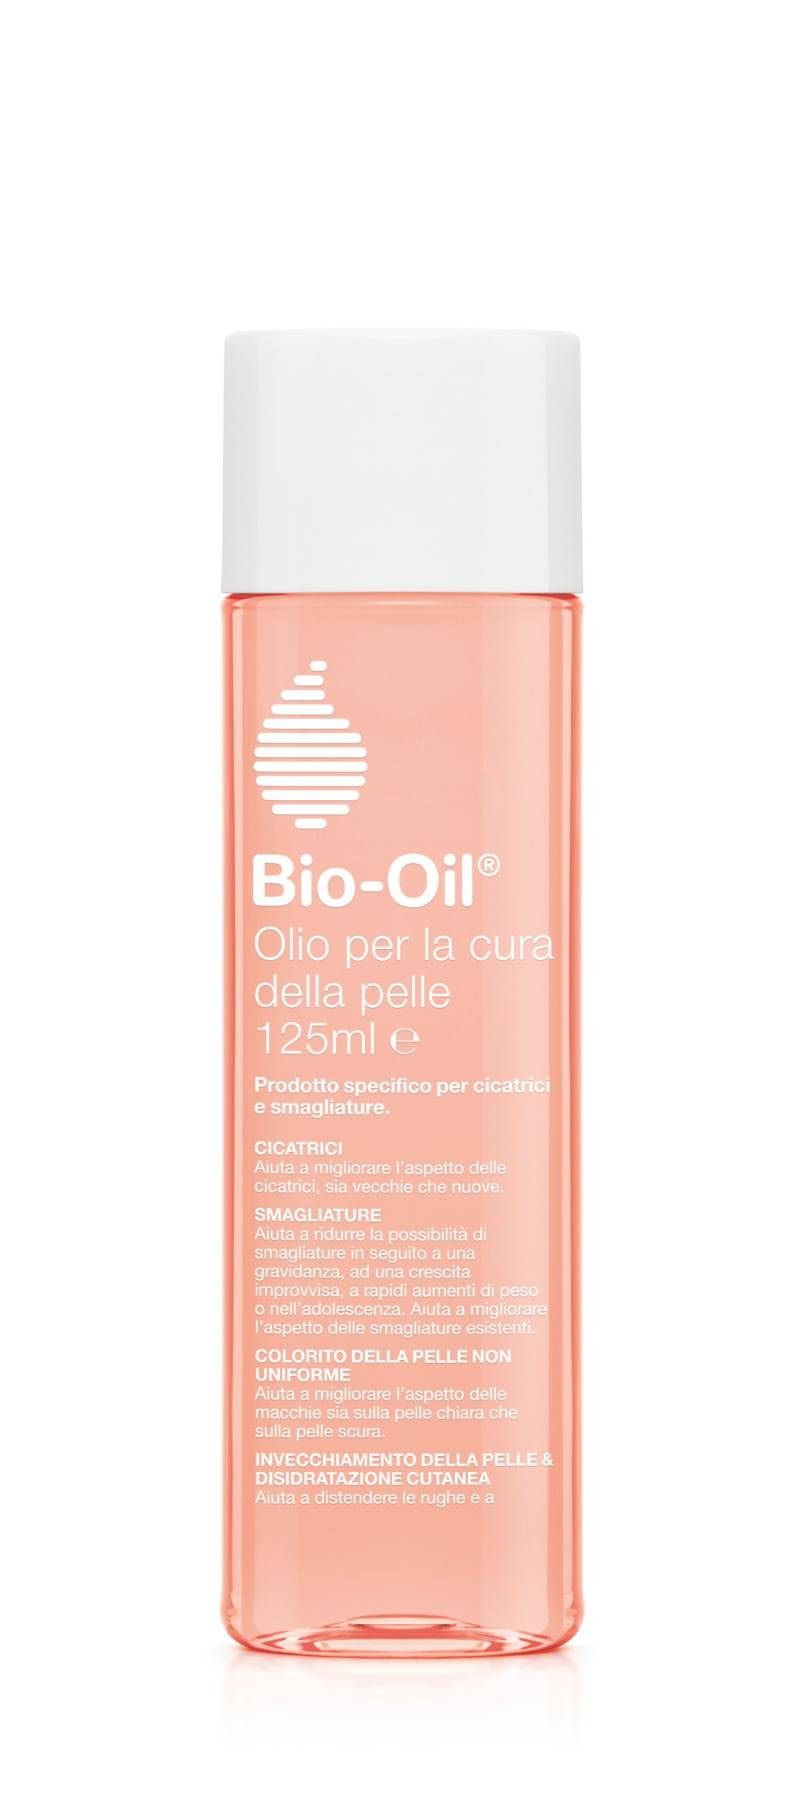 924526357 - Bio-Oil Olio per la Cura della Pelle 125ml - 7855135_3.jpg